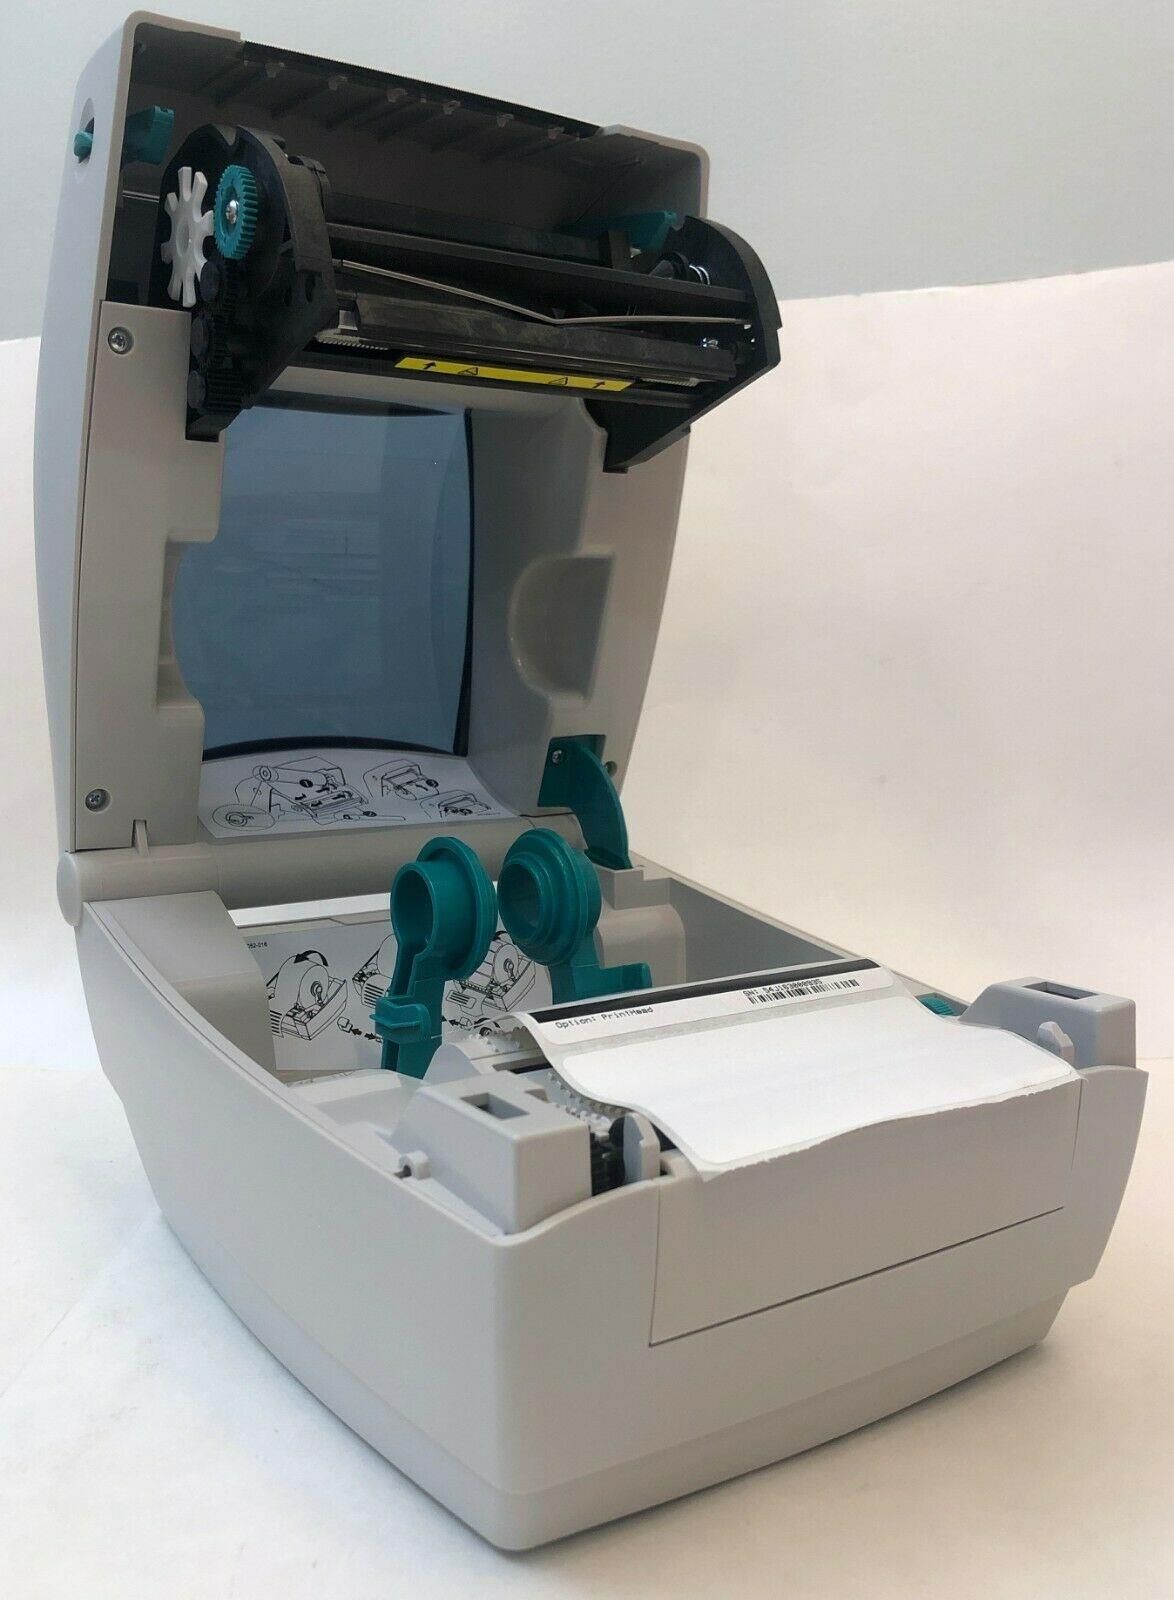 Термотрансферный принтер Zebra GC420t. Работает в связке с Новая Почта